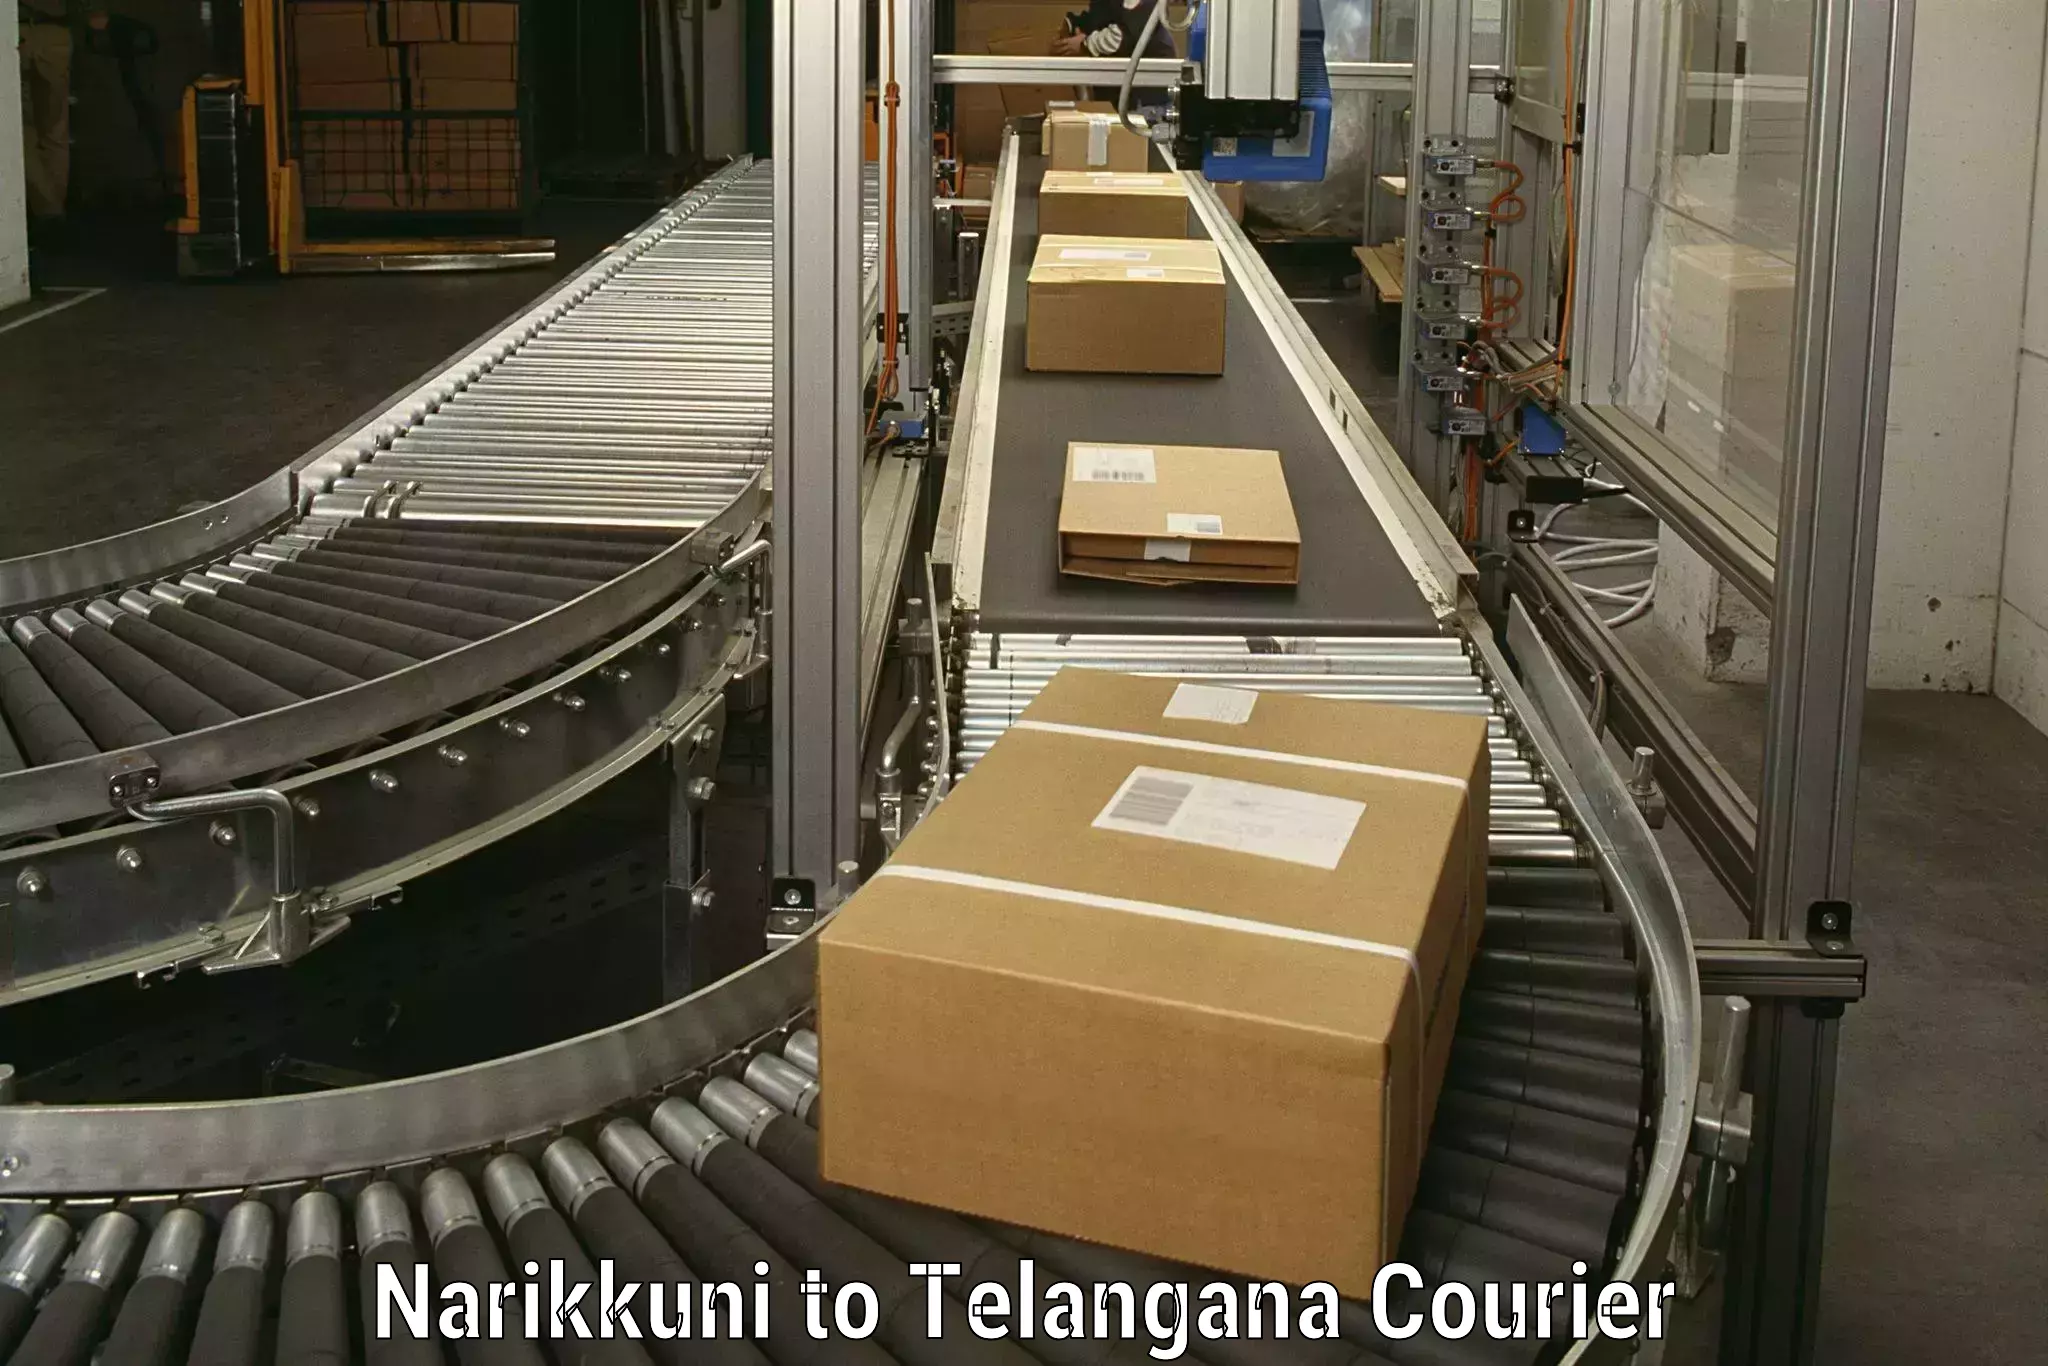 Efficient packing and moving Narikkuni to Koratla